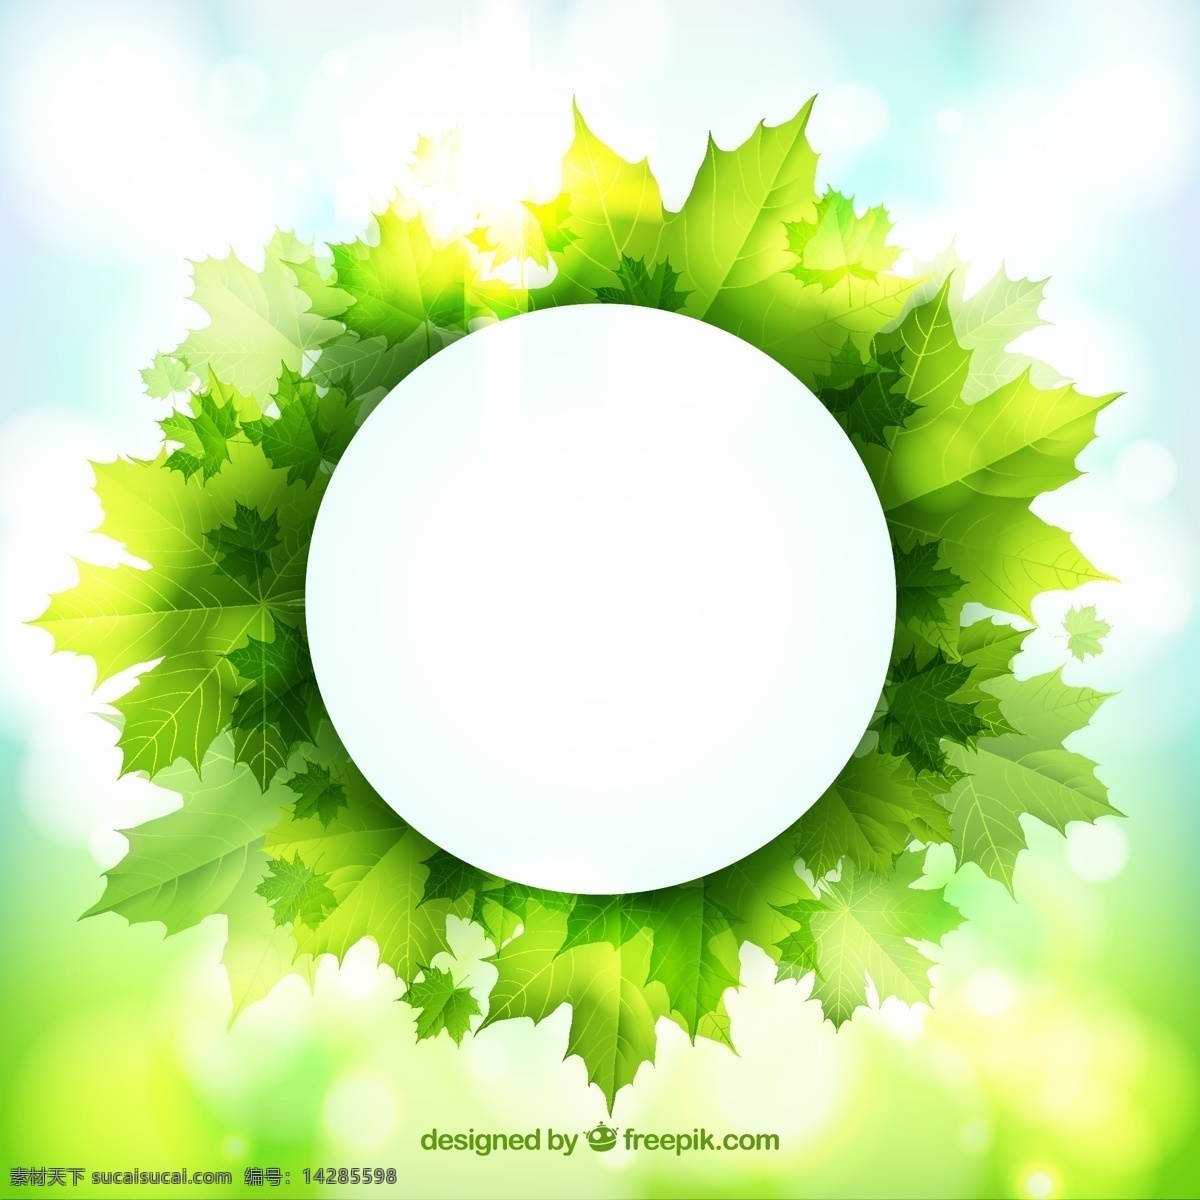 绿色 枫叶 装饰 圆形 标签 背景 矢量图 圆形标签 底纹边框 其他素材